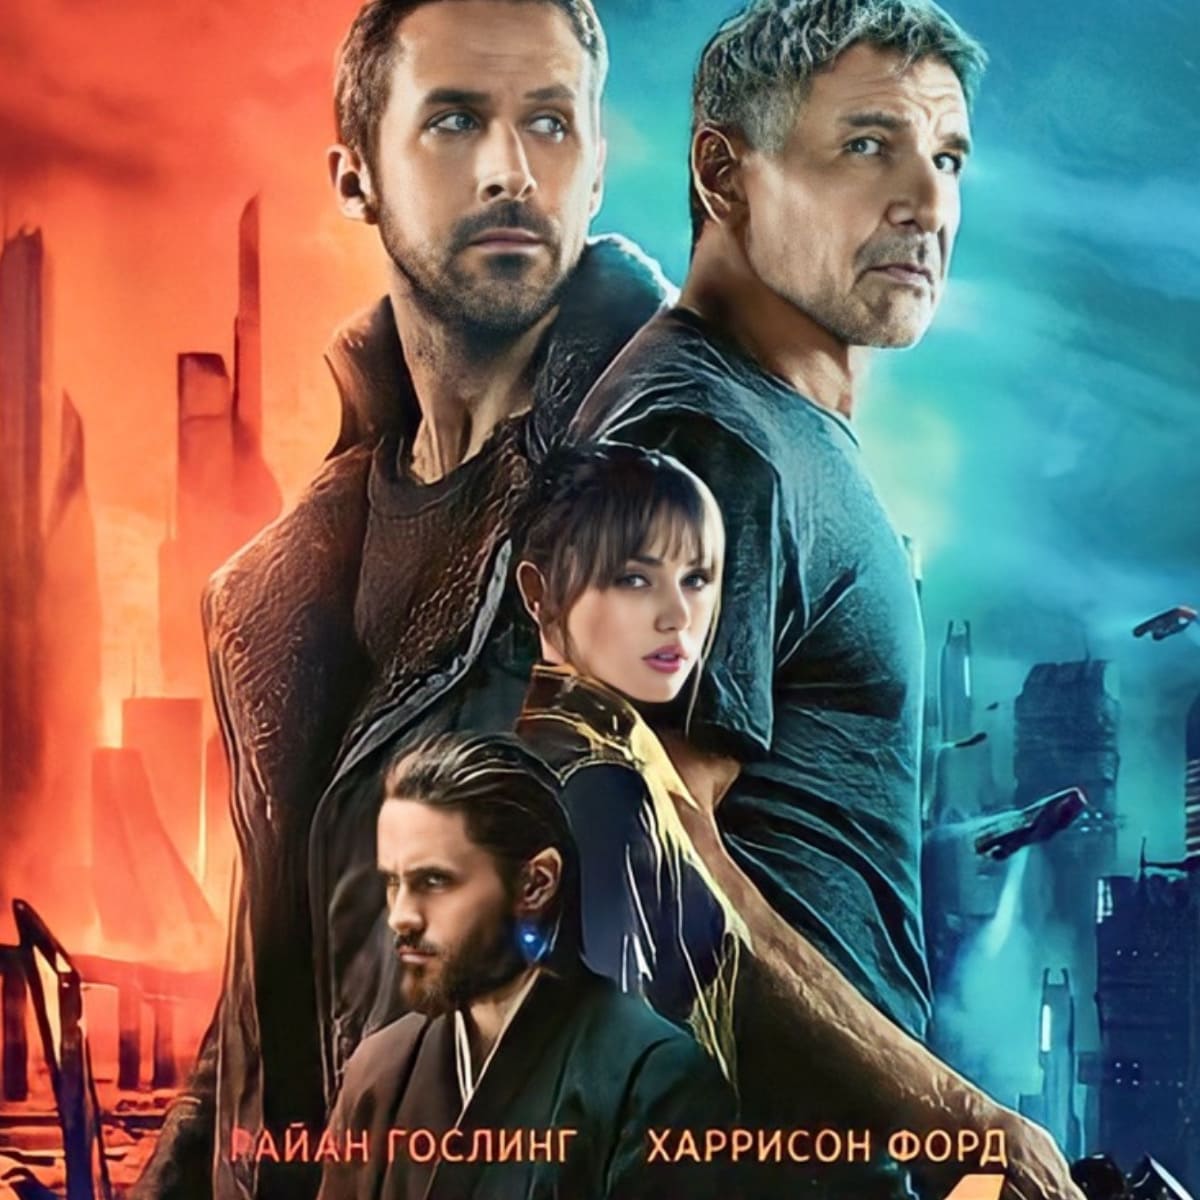 Blade Runner 2049 movie poster.